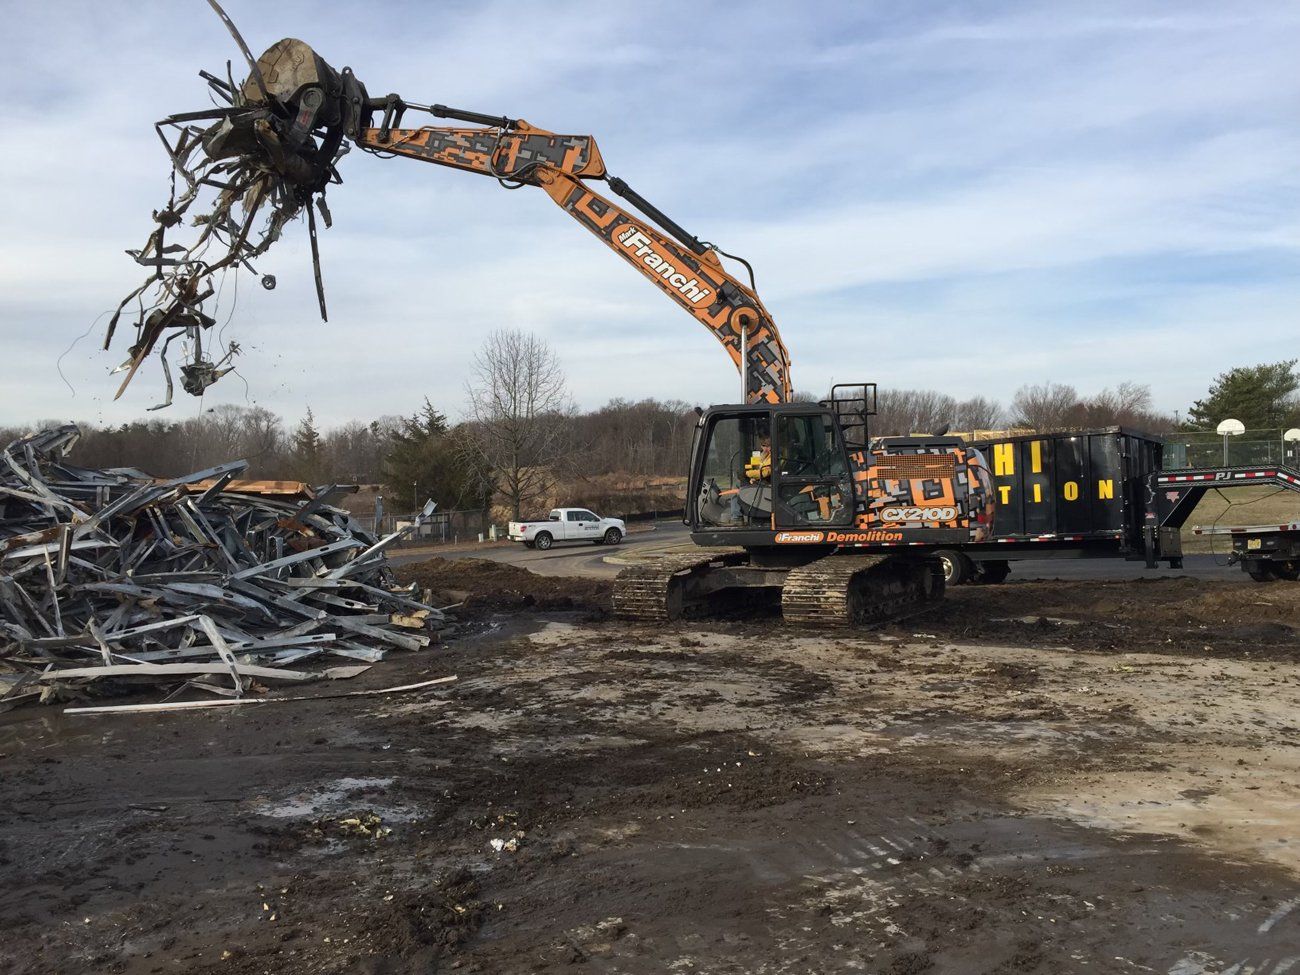 Scrap Steel Grabber Excavator — Demolition in Sewell, NJ